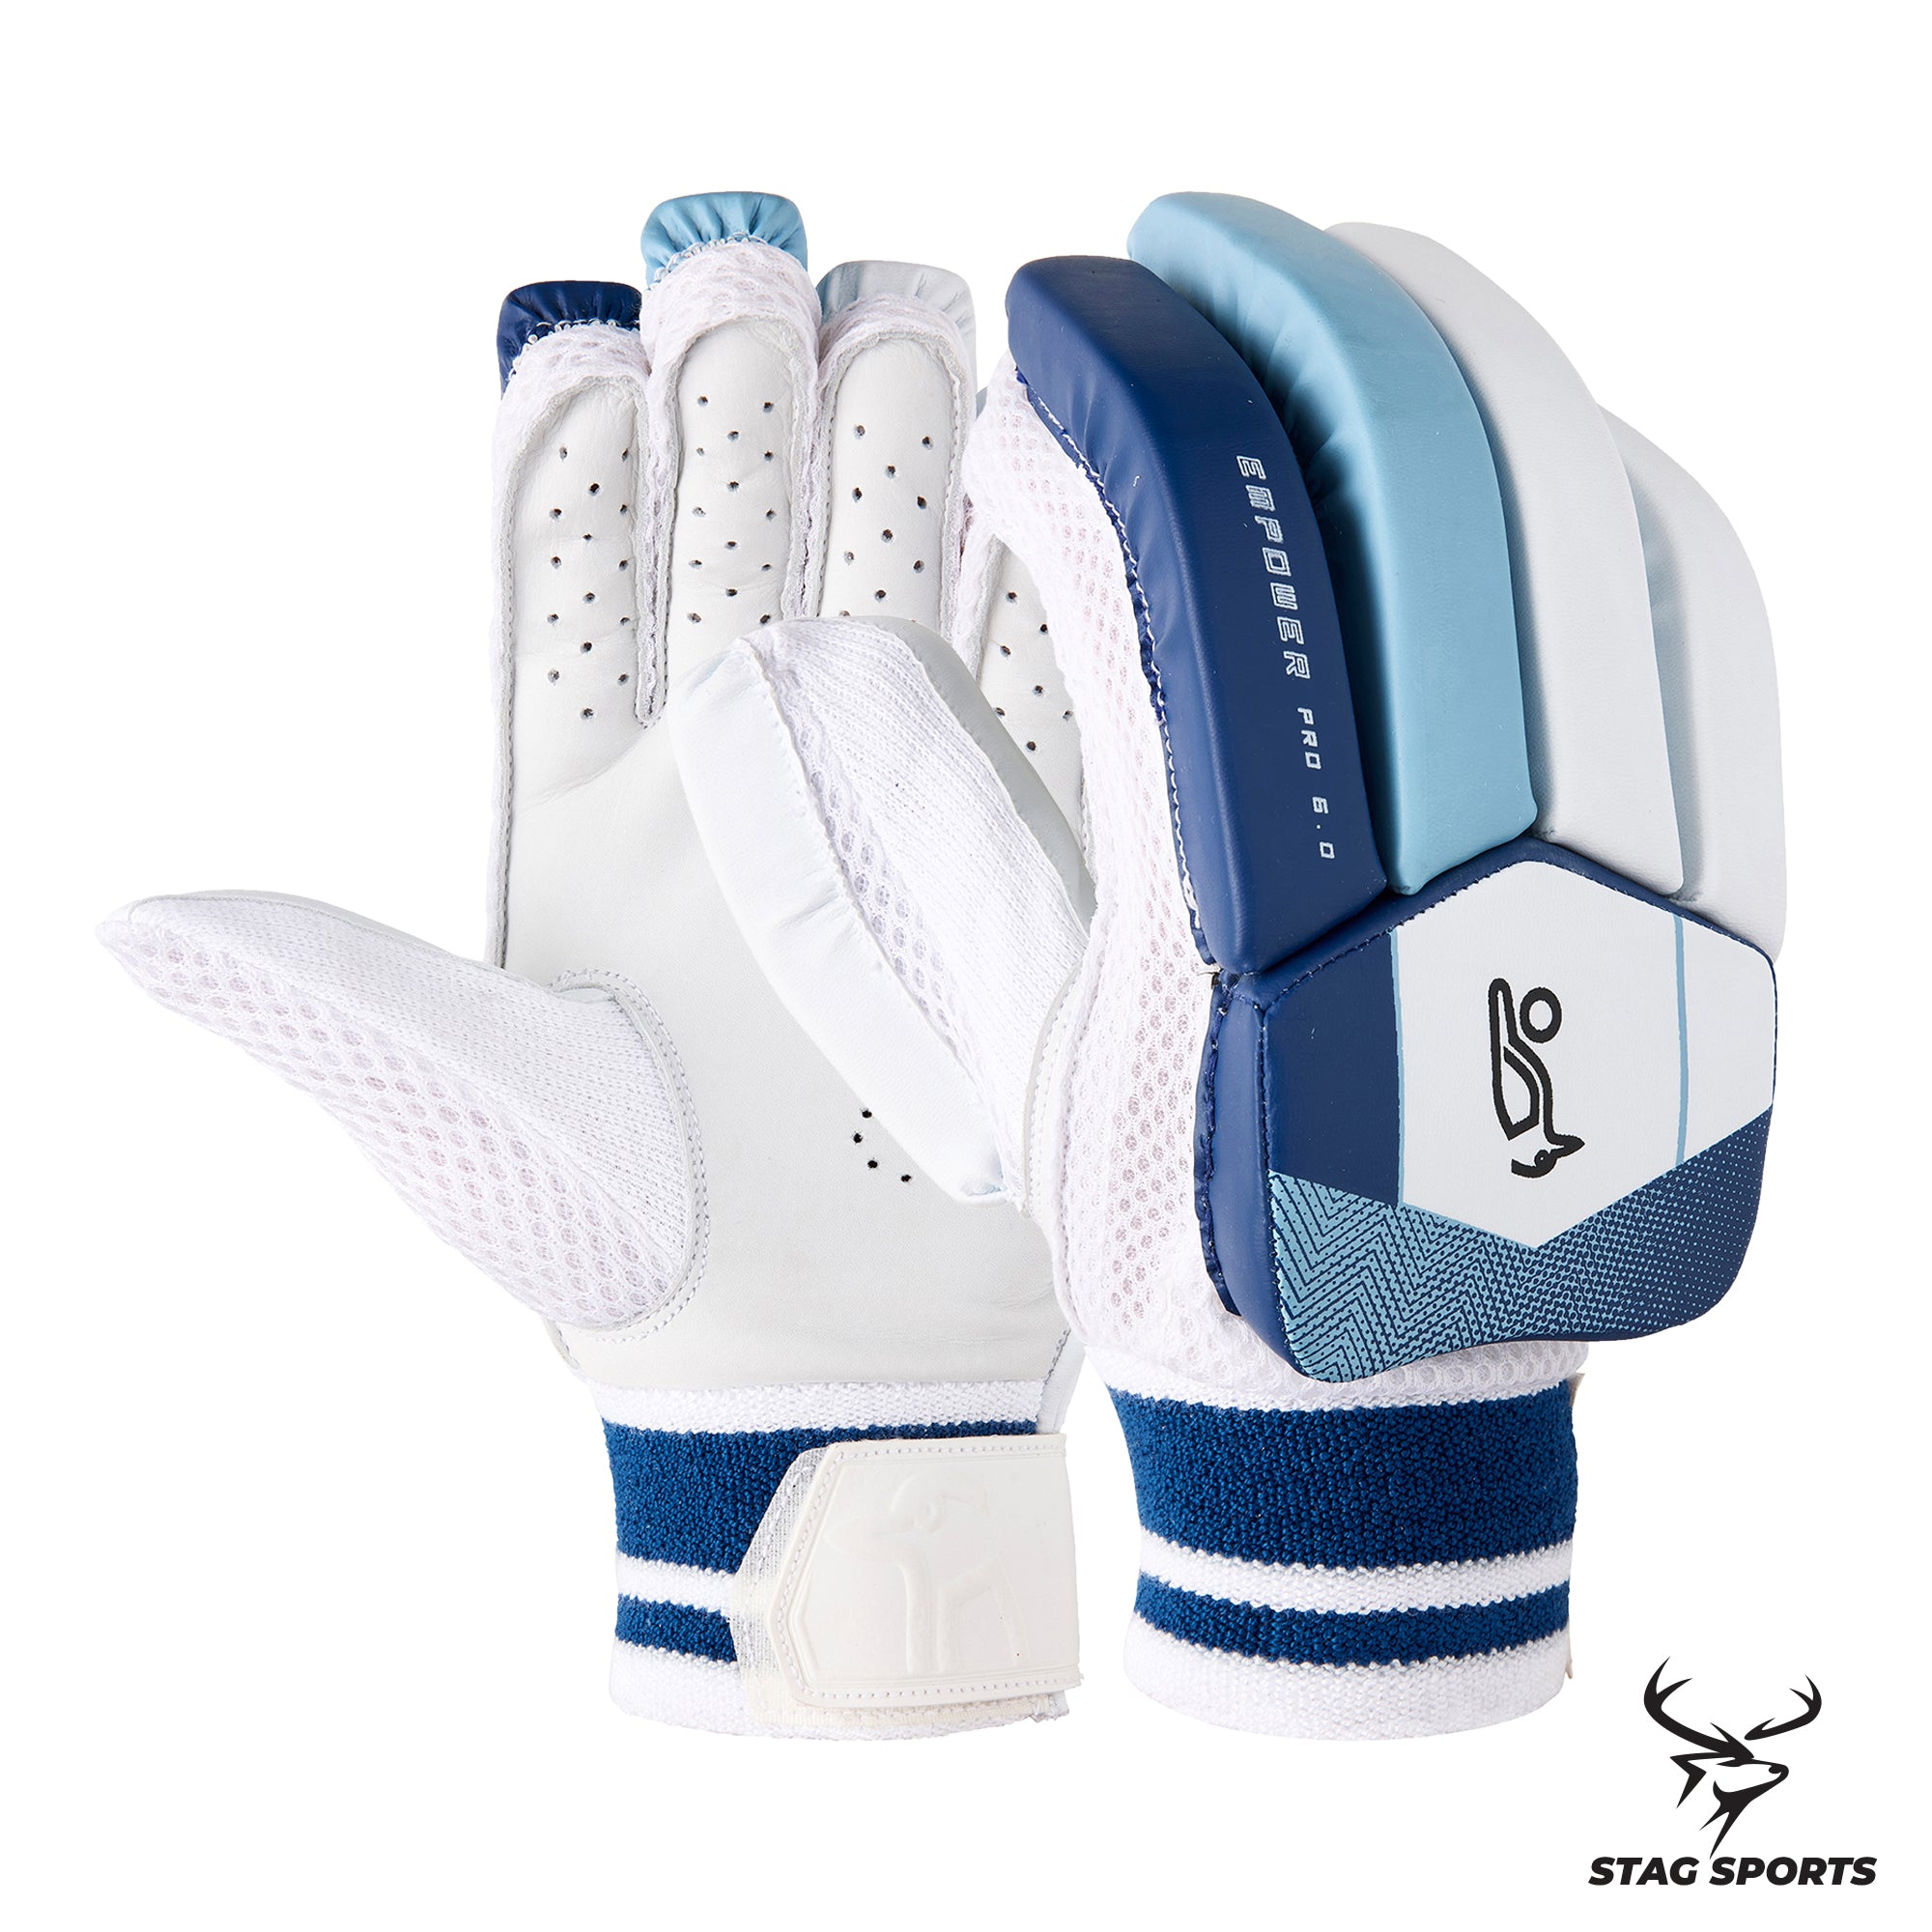 Kookaburra Empower Pro 6.0 Cricket Batting Gloves